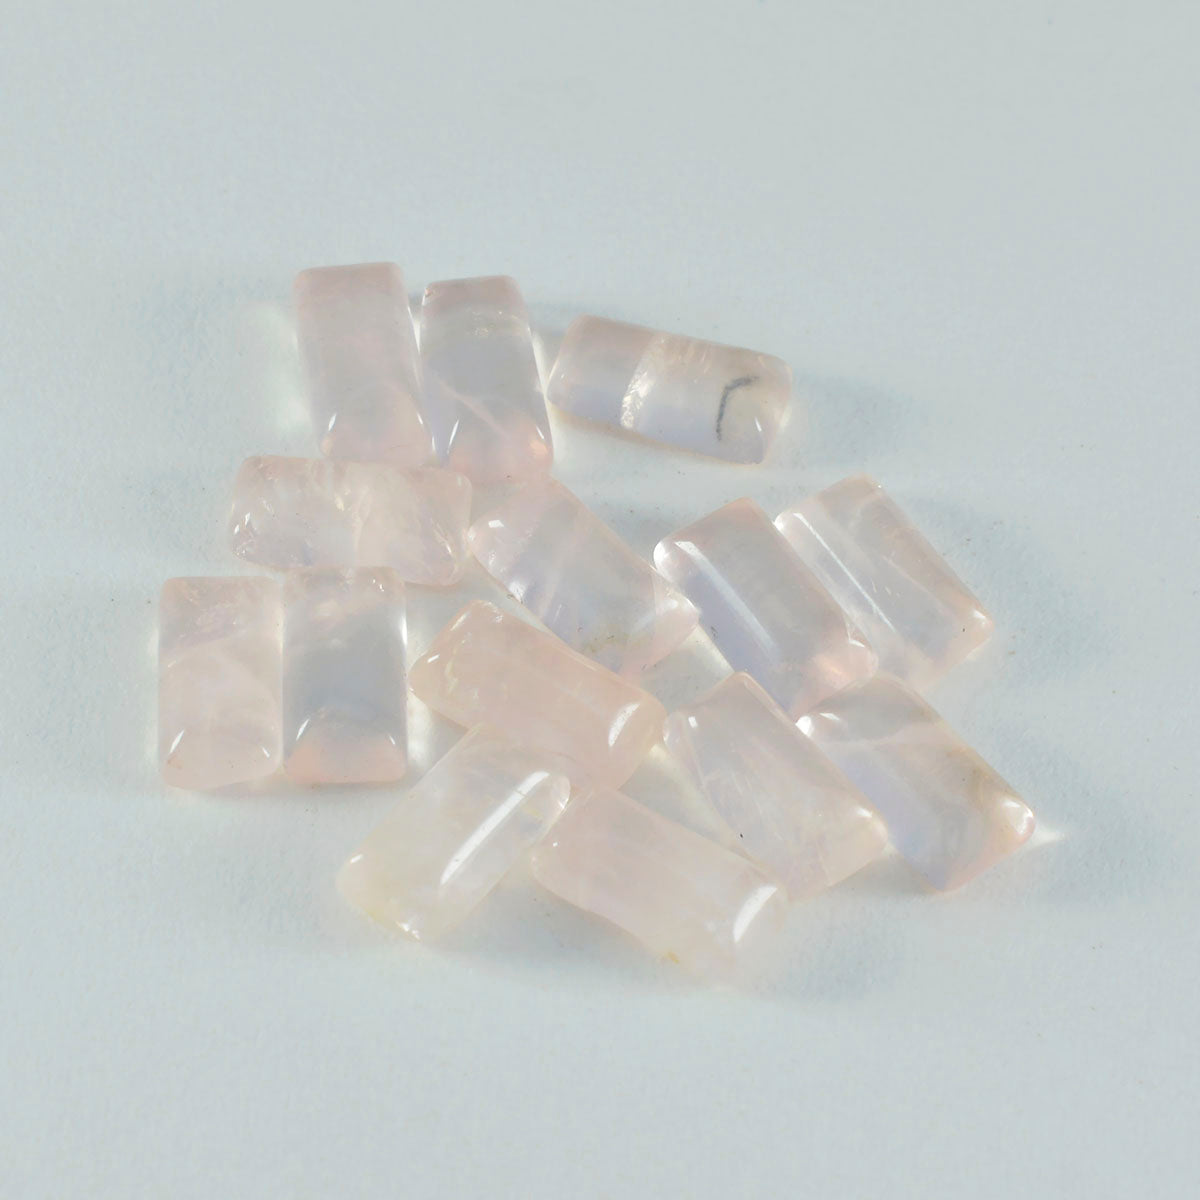 riyogems 1 шт. кабошон из розового кварца 4x8 мм в форме багета, красивый качественный драгоценный камень